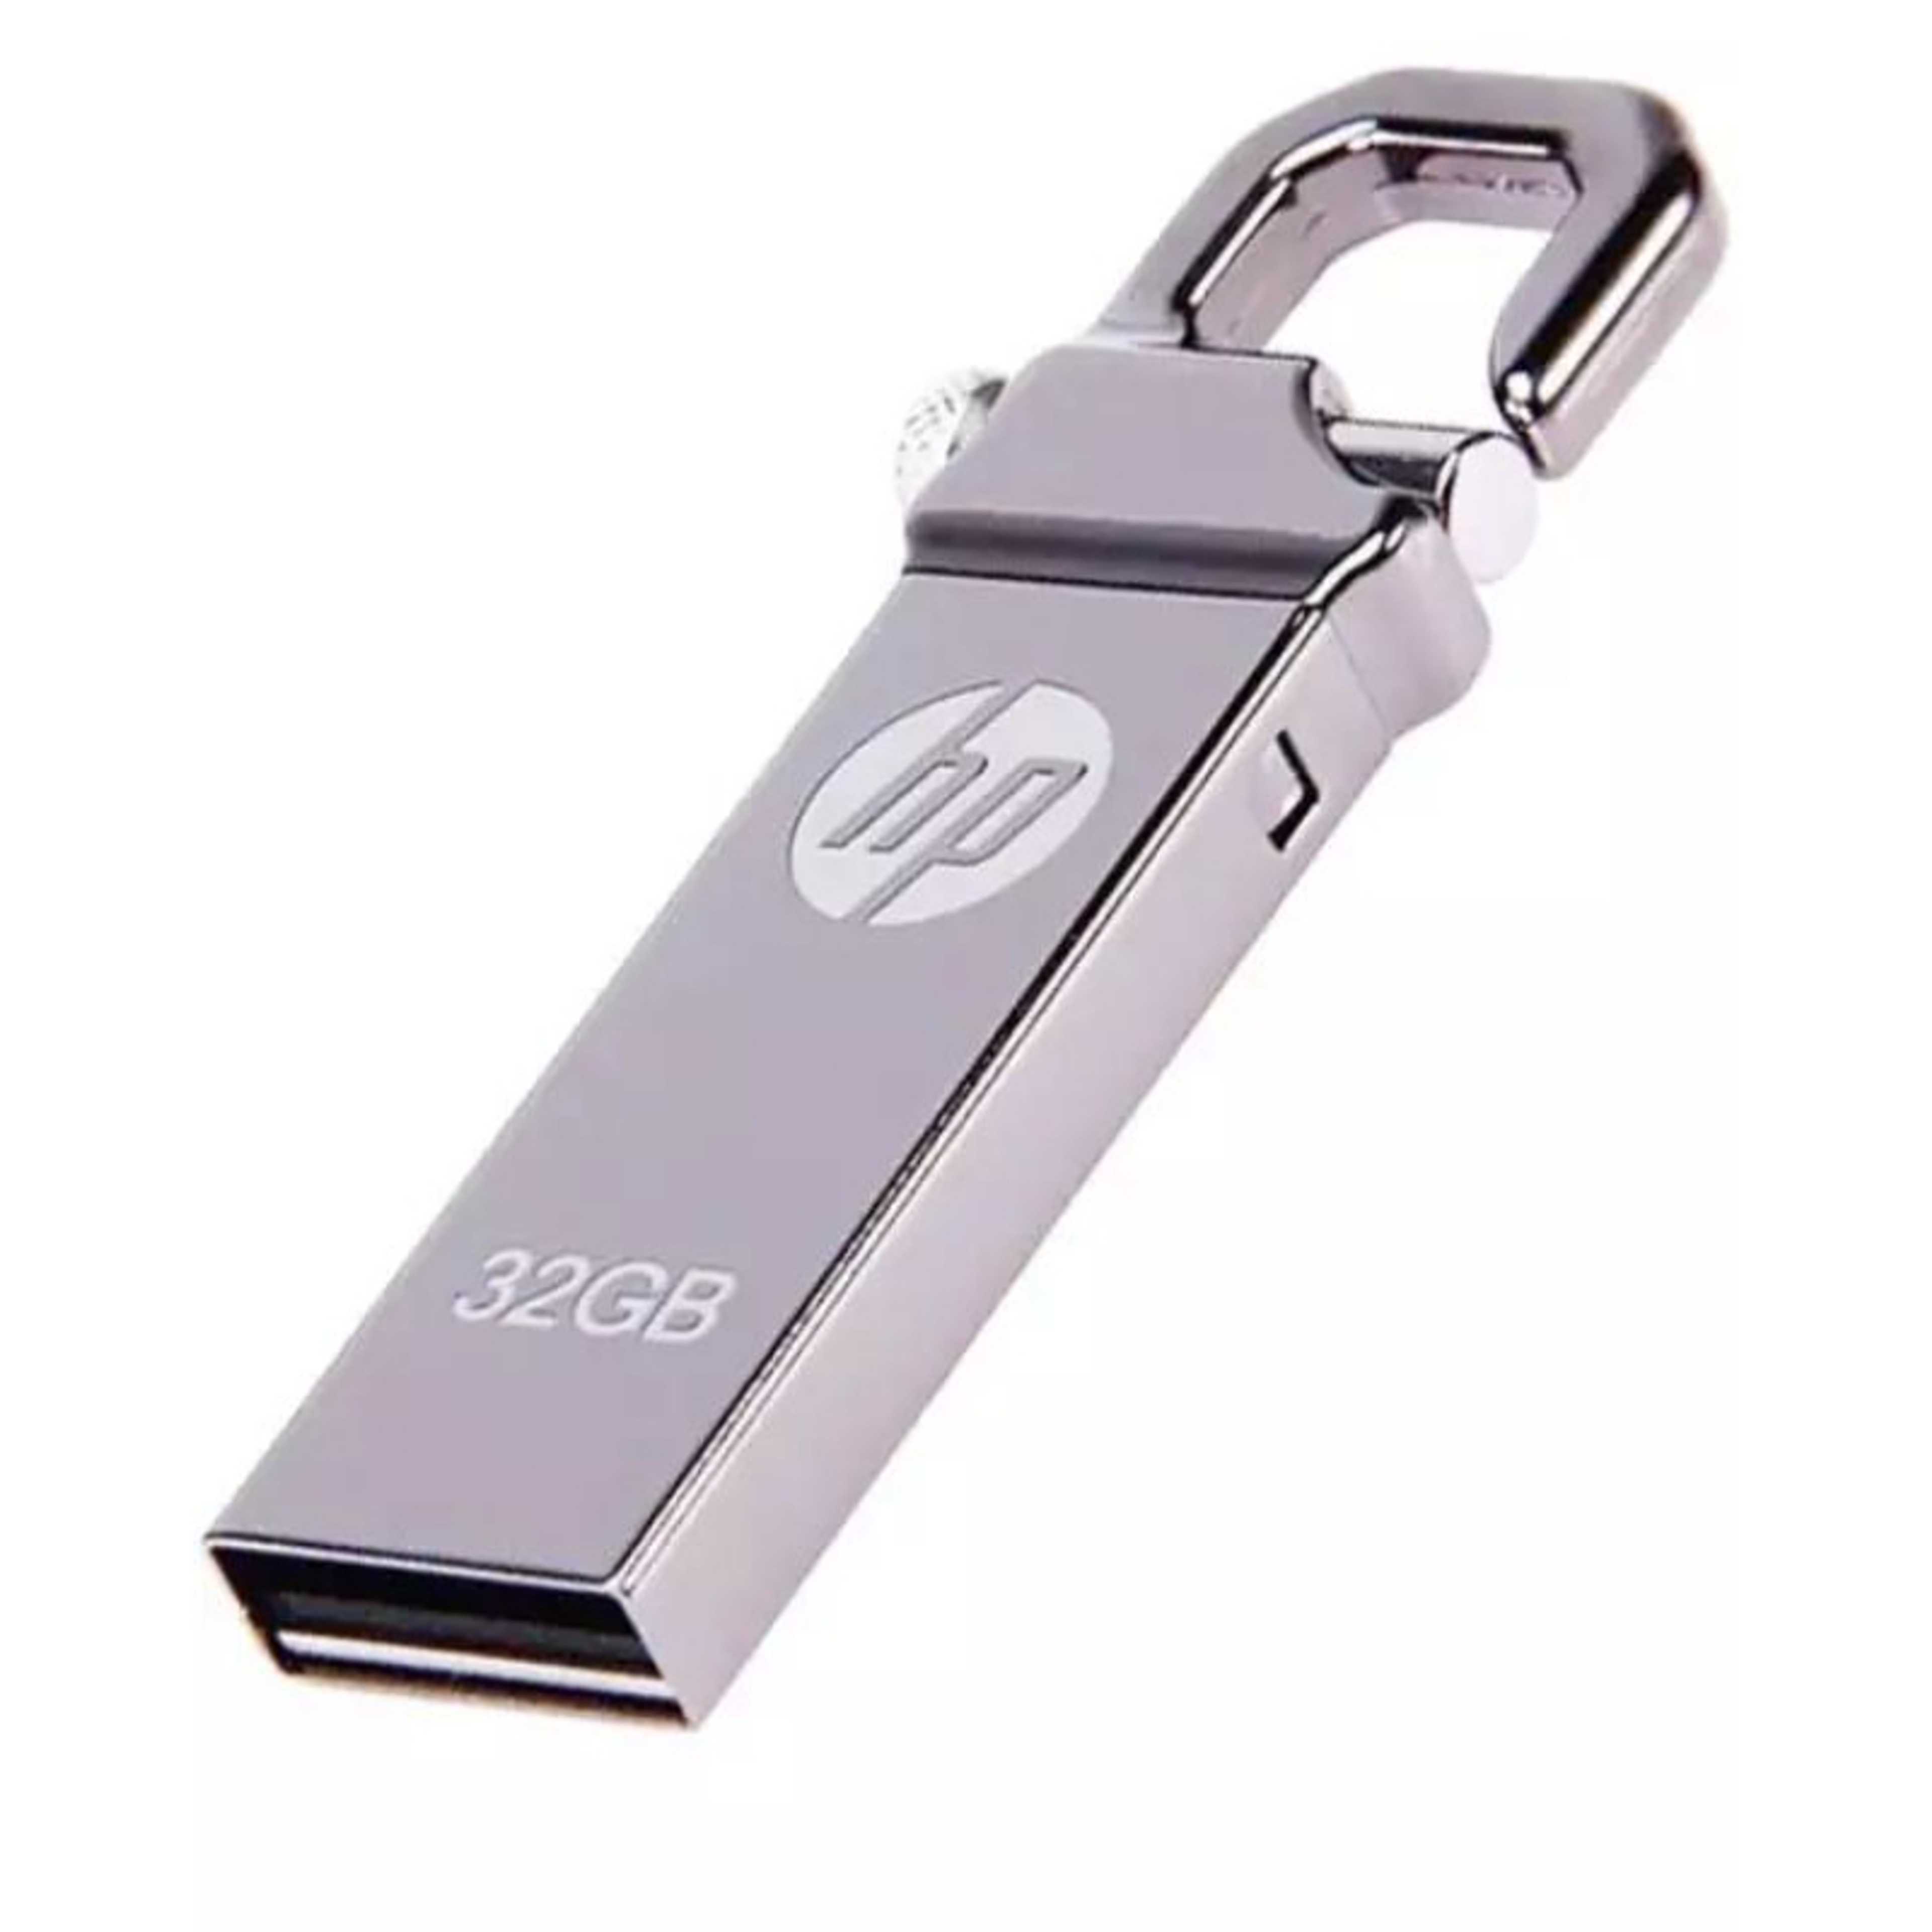 USB Flash Drive 32 GB